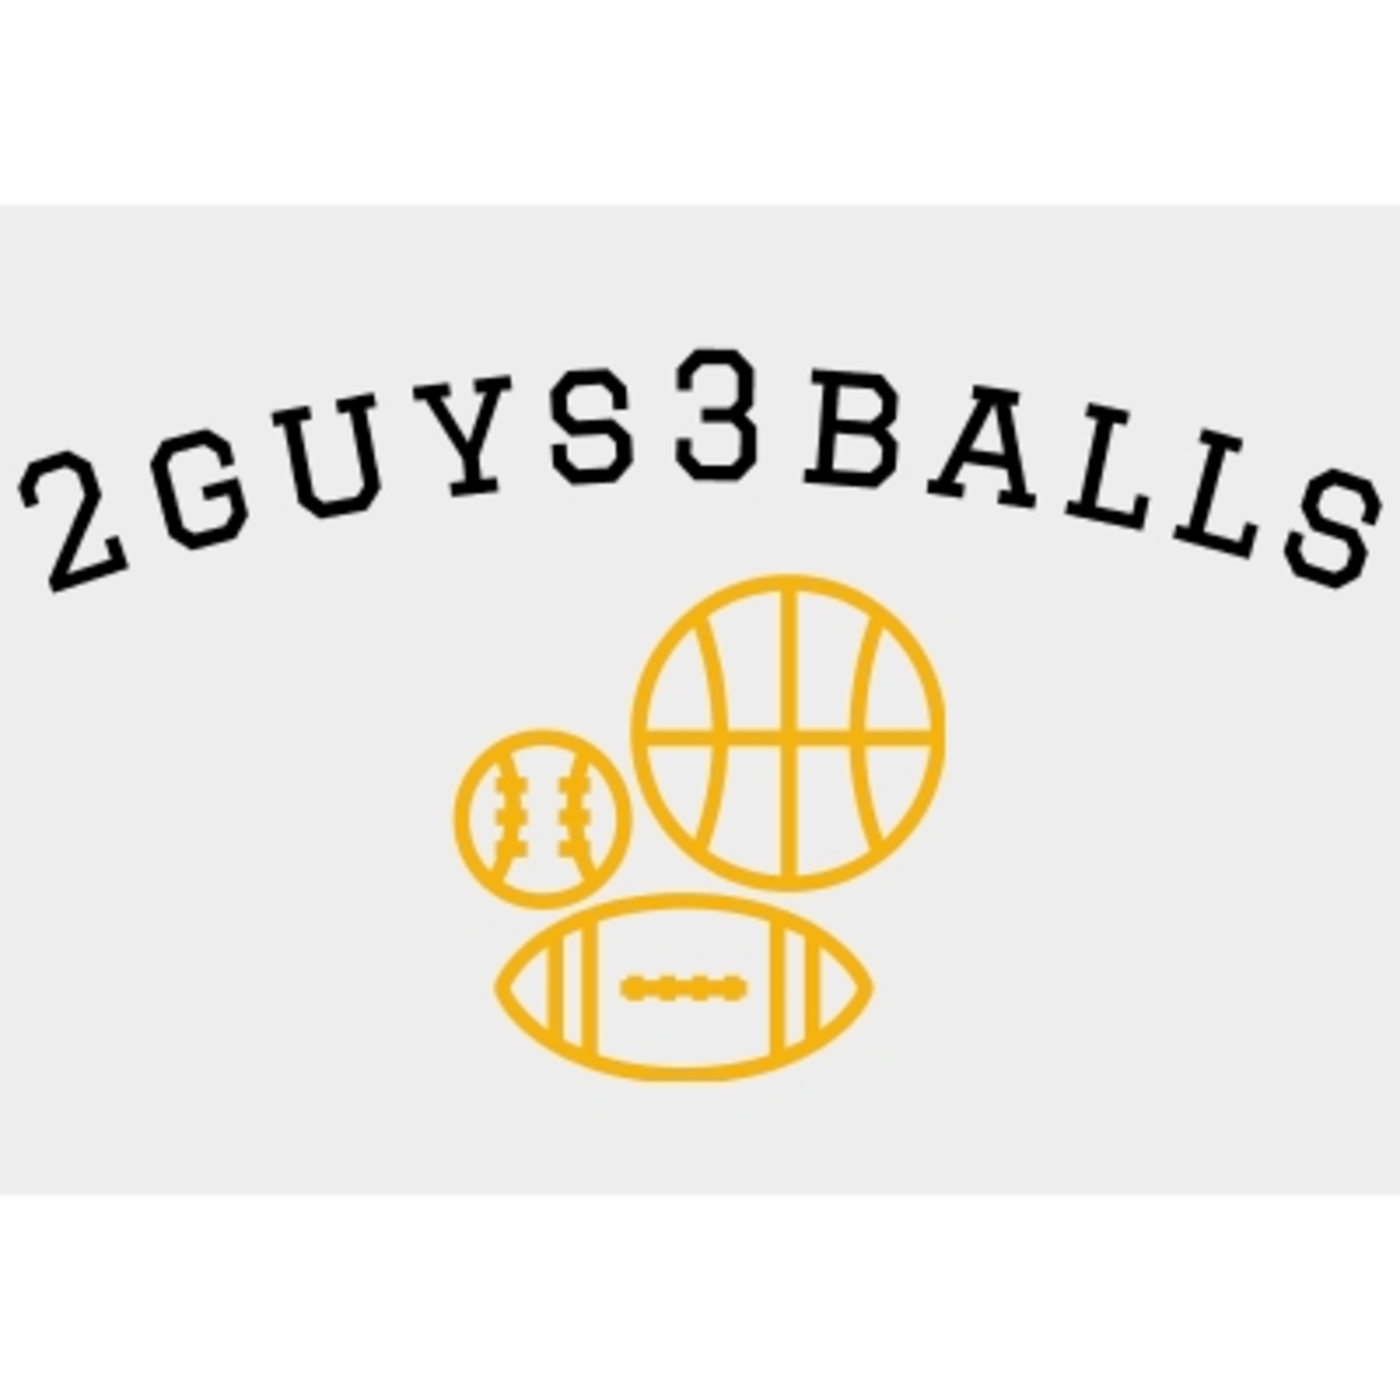 2guys3balls Podcast artwork